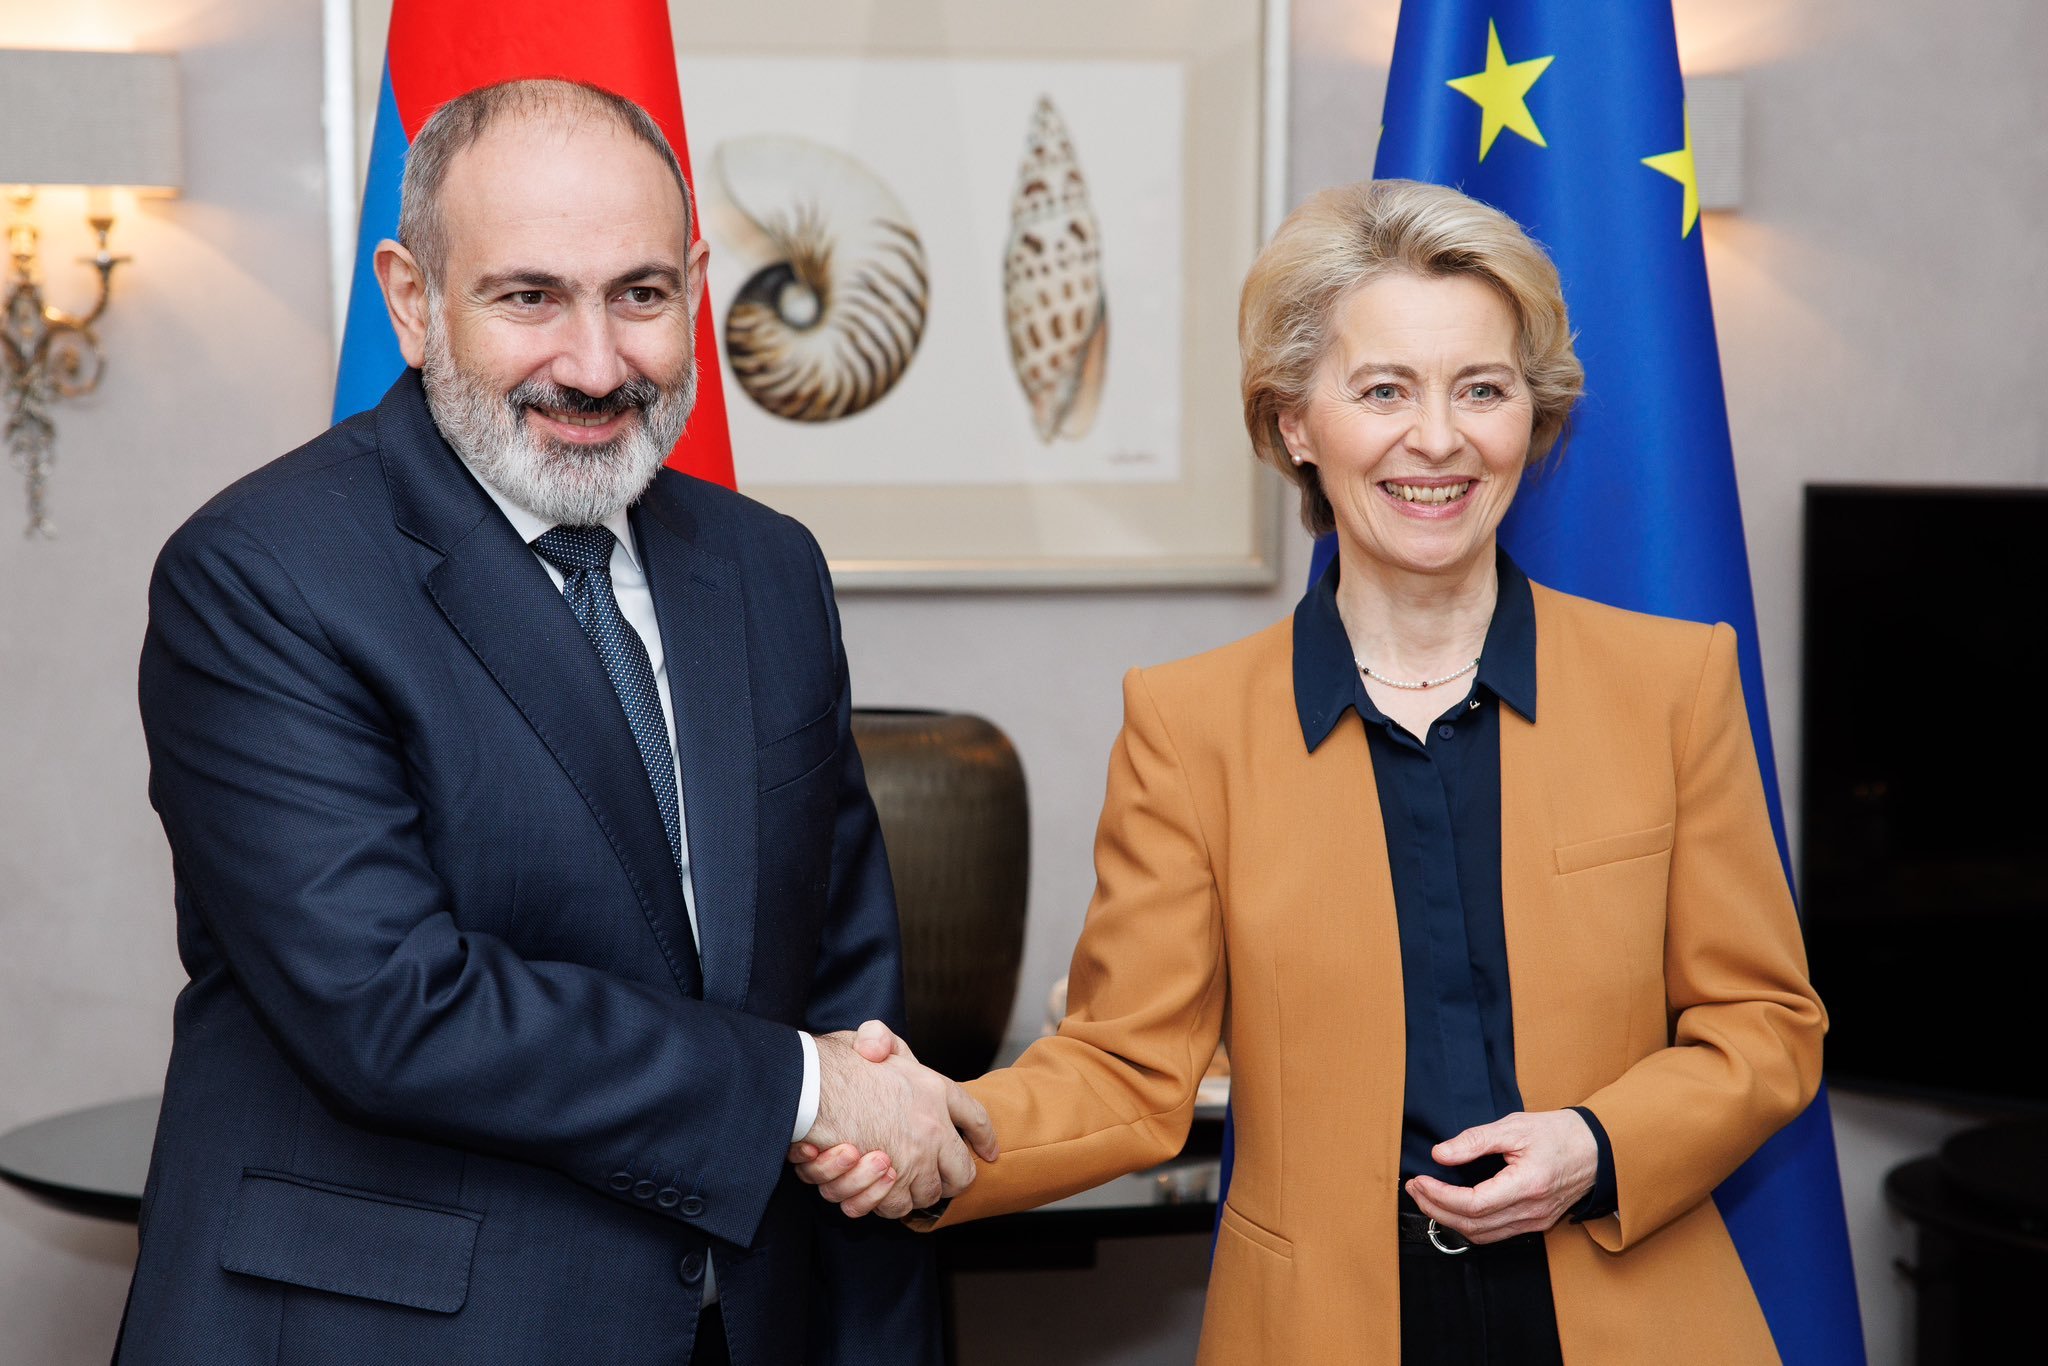 ԵՄ-ն Հայաստանի հավատարիմ գործընկերն է․ Եվրահանձնաժողովի նախագահը՝ Փաշինյանի հետ հանդիպմանը